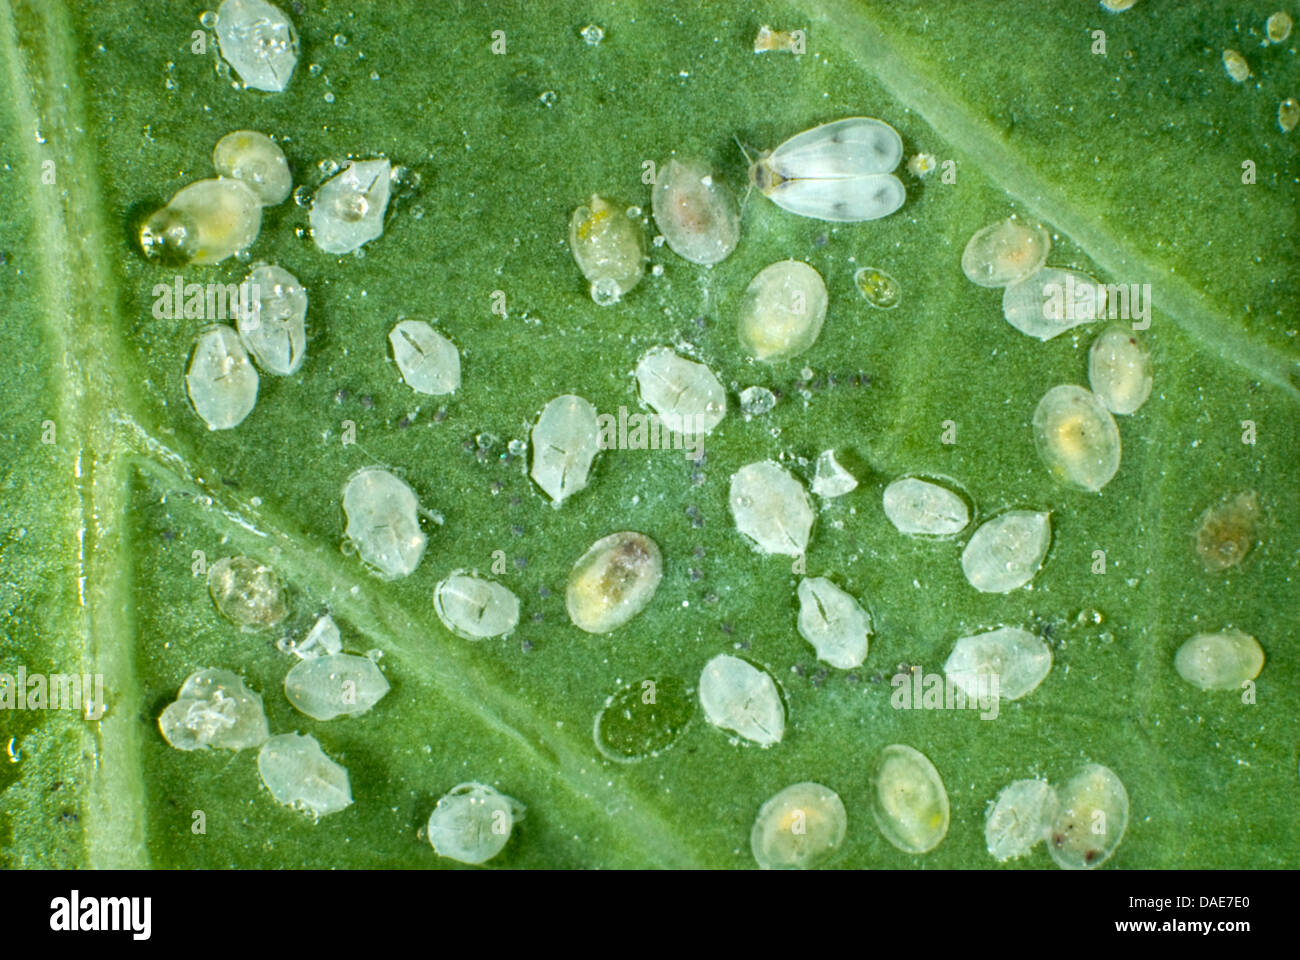 L'aleurode du chou adultes, Aleyrodes proletella, avec échelles des larves, pupes et éclosent de nymphose sur une feuille de chou Banque D'Images